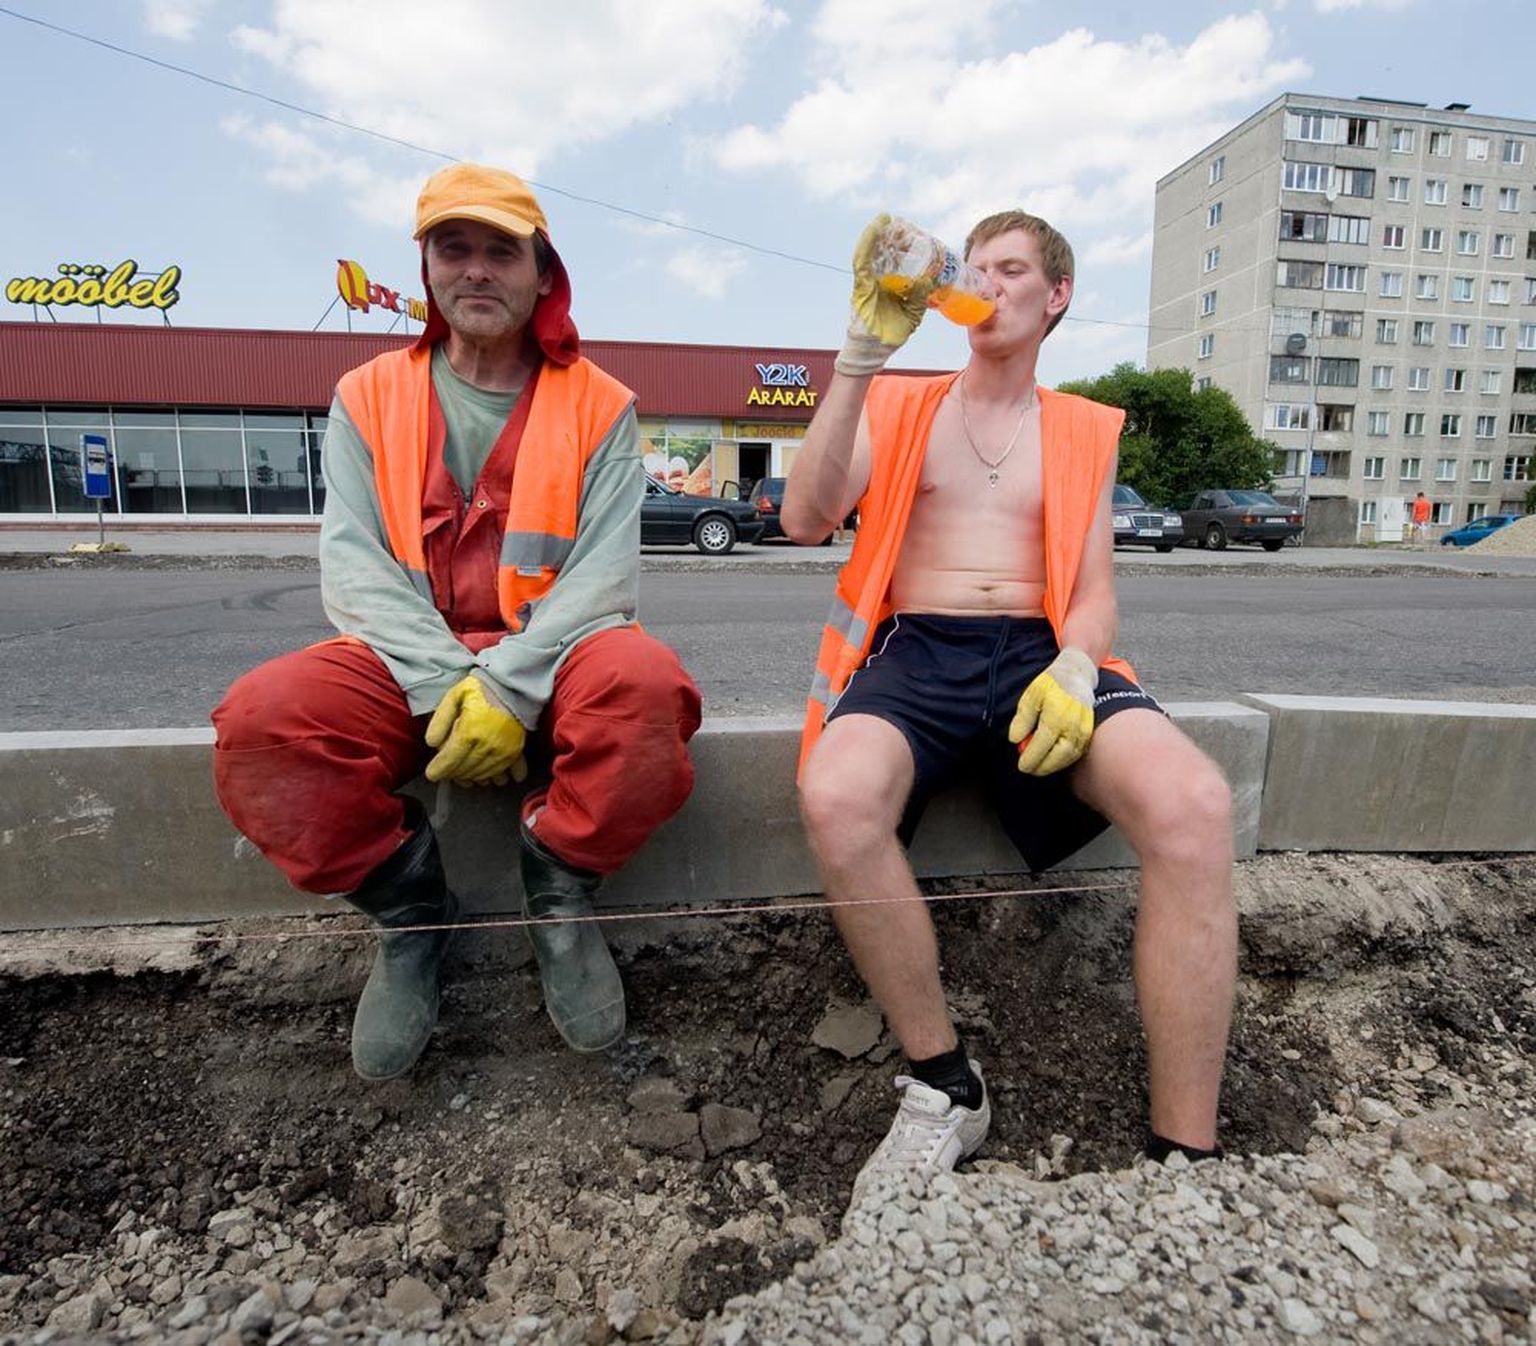 Kivitöölised Timur Ollo (vasakul) ja Anton Mett leiavad, et vaatamata tapvale kuumusele vajab töö tegemist ja raha teenimist.